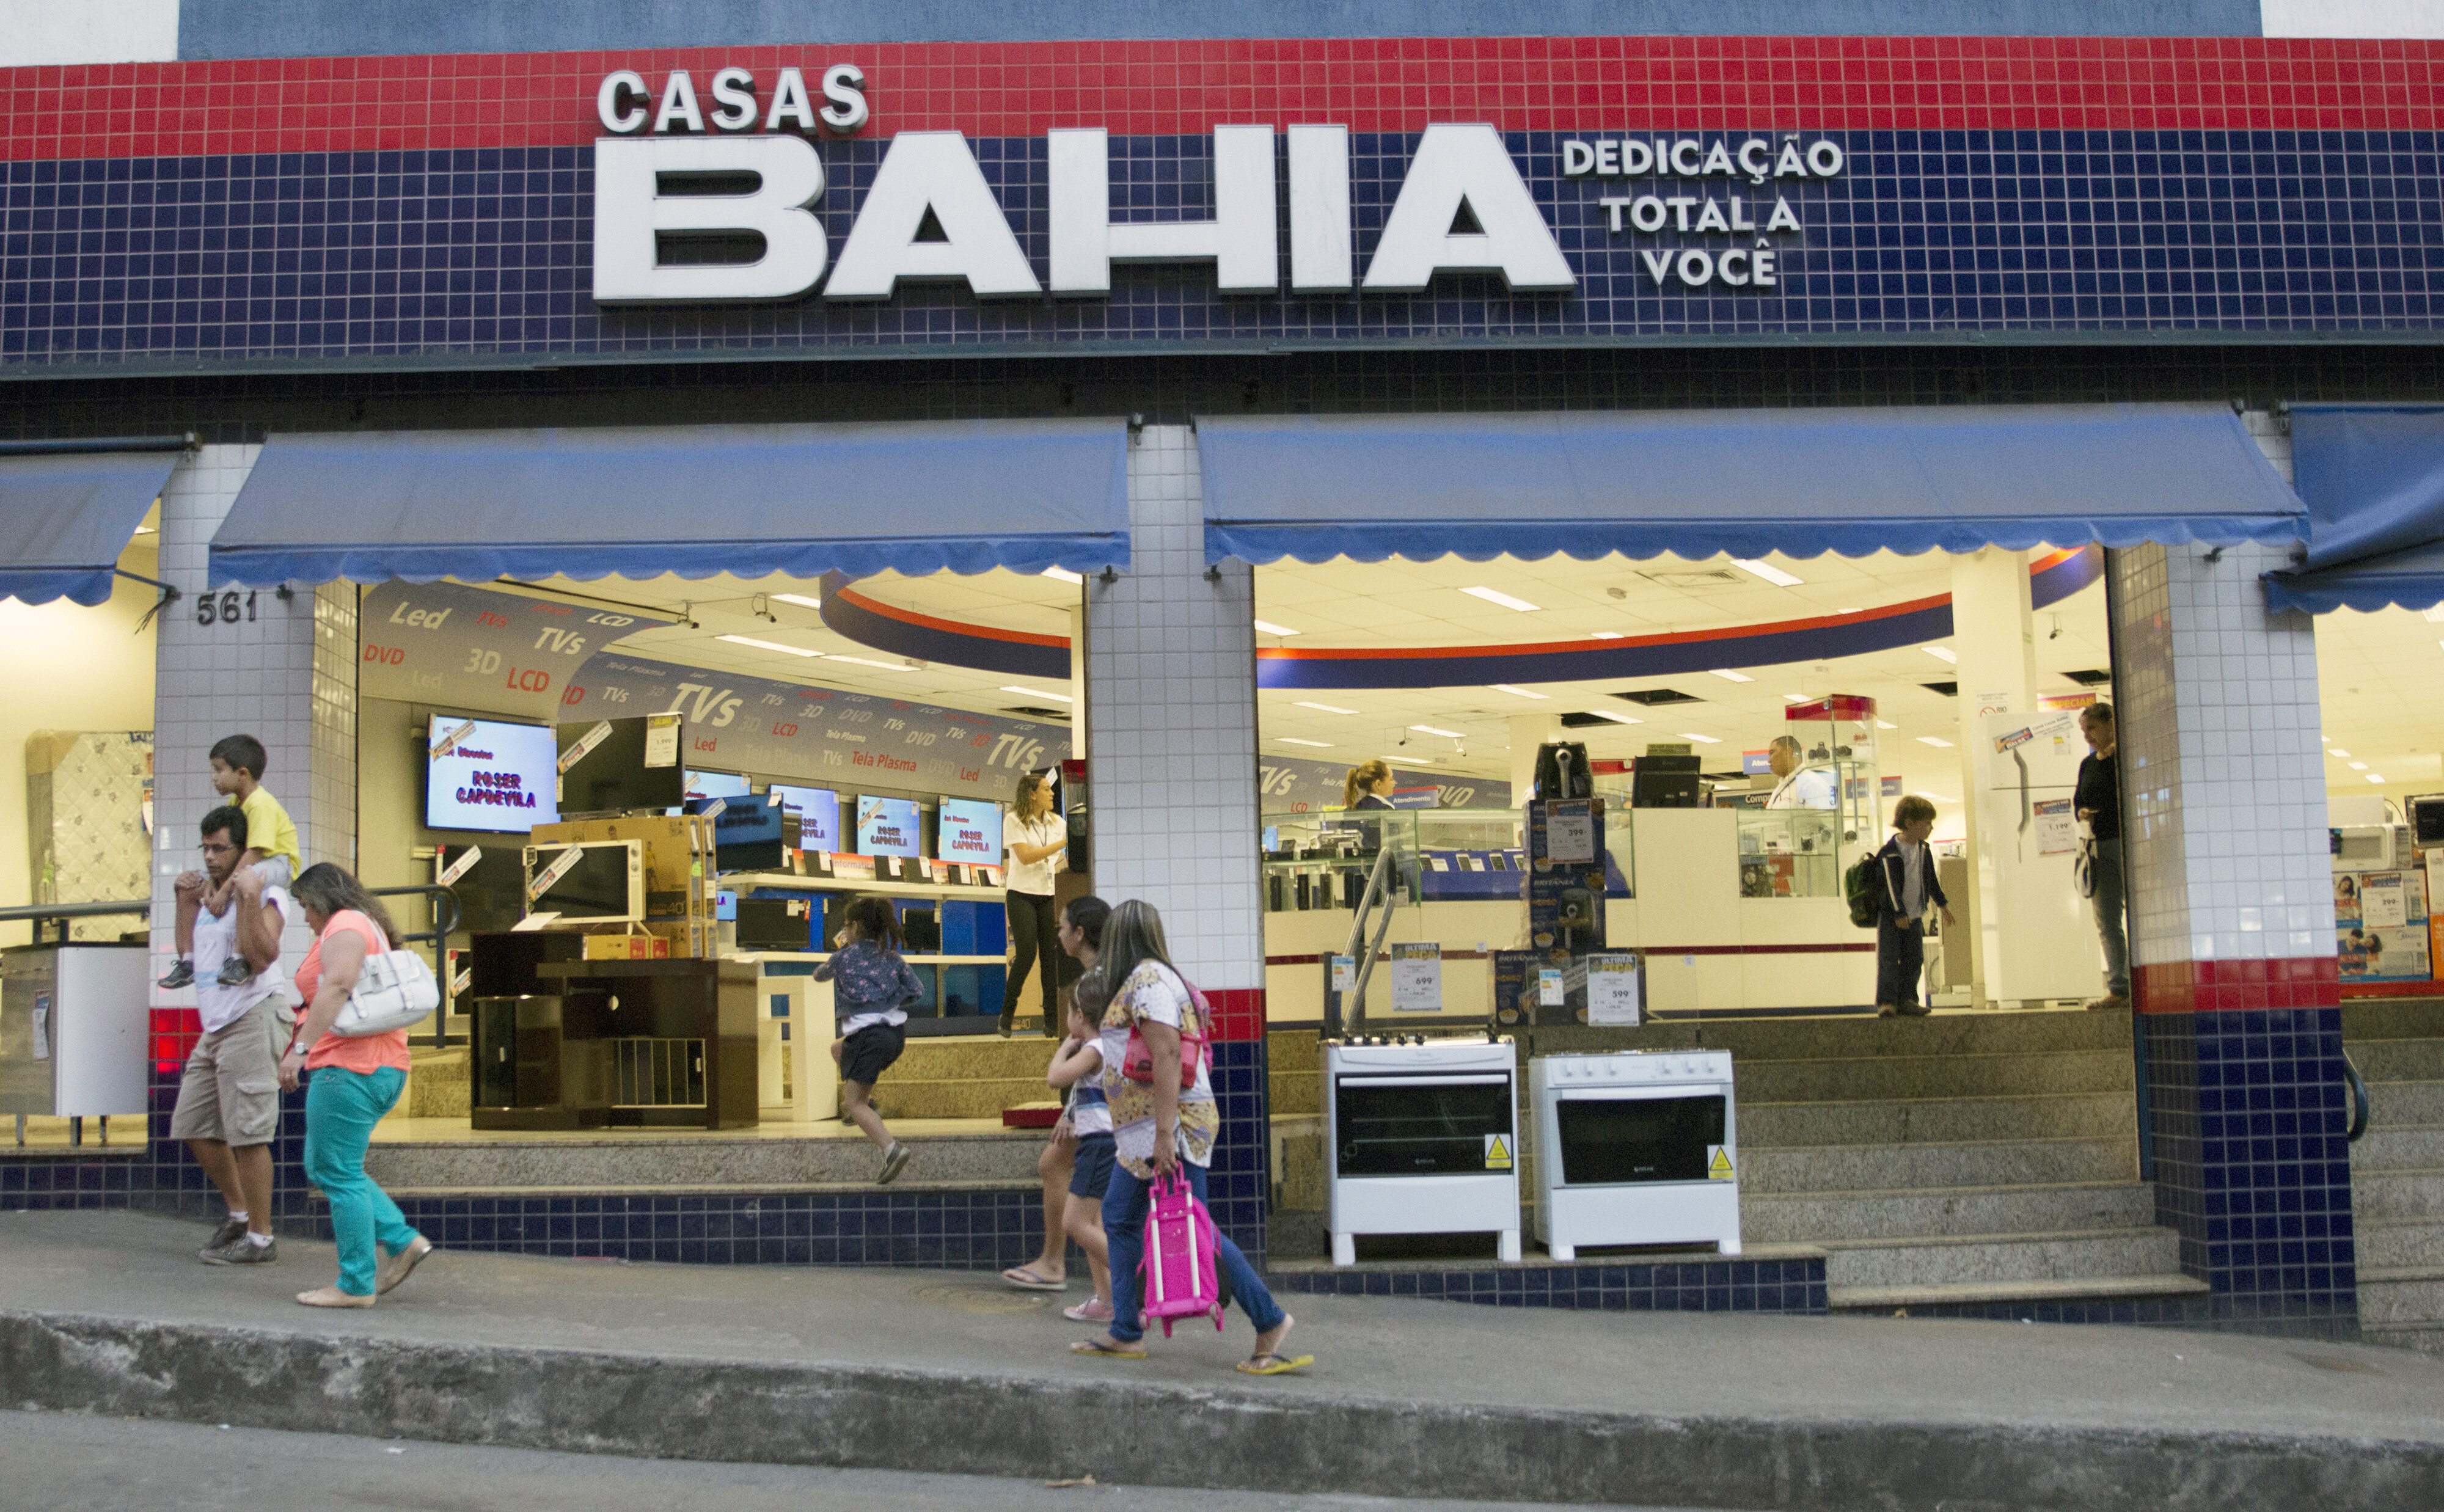 Procon multa Casas Bahia por propaganda enganosa